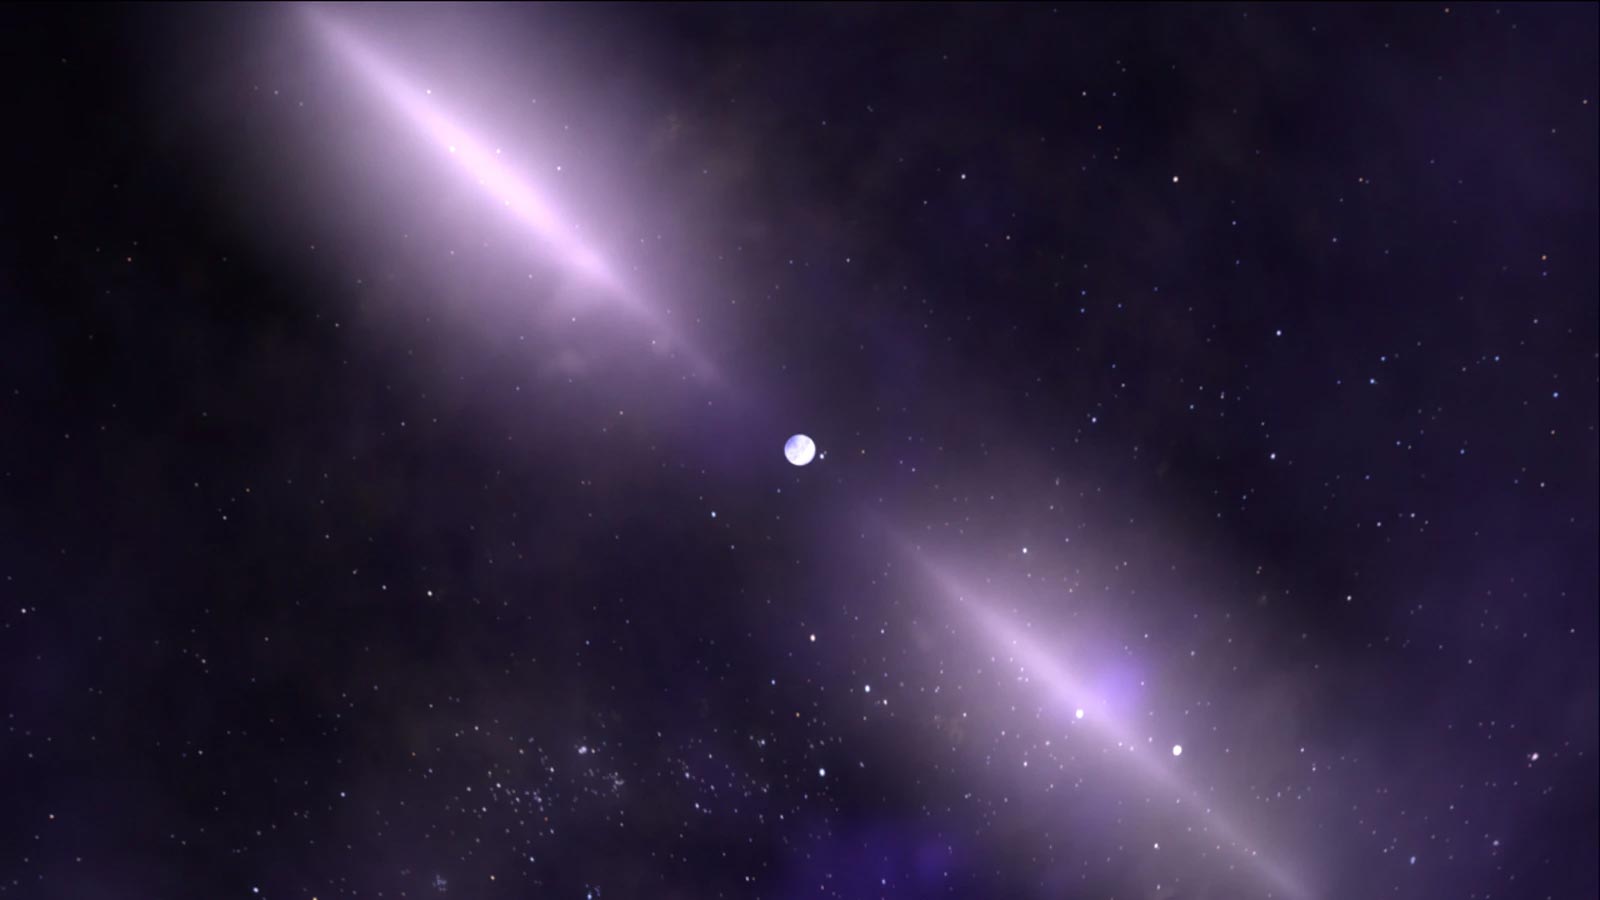 פולסרים הם כוכבי נייטרונים המסתחררים במהירות ופולטים אלומות צרות של גלי רדיו. קרדיט: NASA’s Goddard Space Flight Center